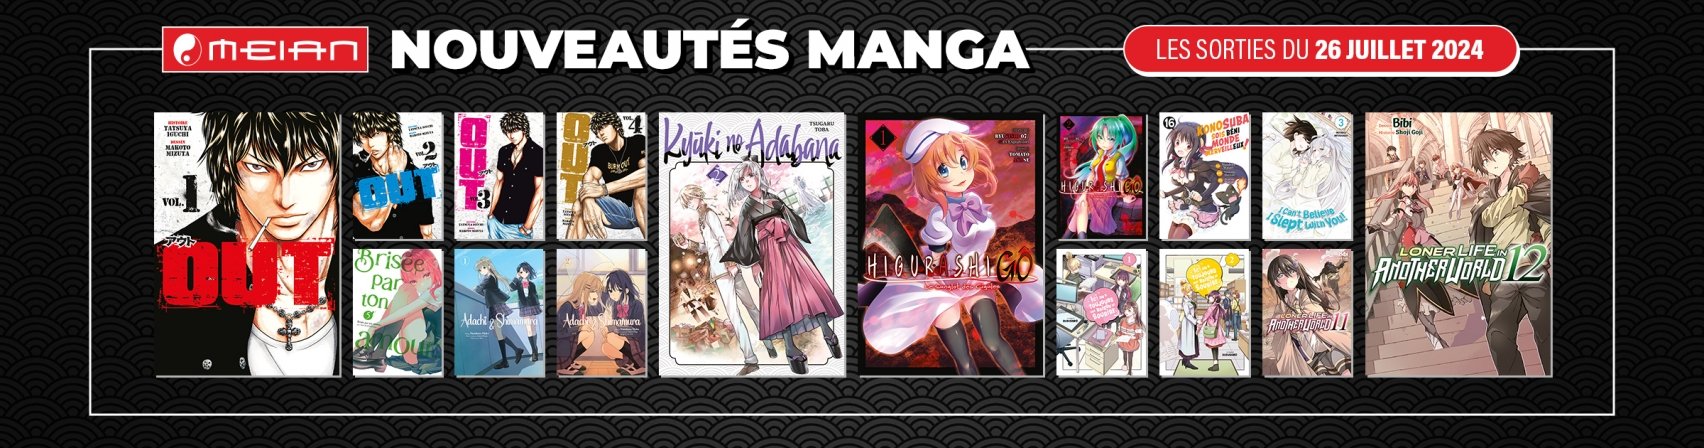 16 nouveaux mangas MEIAN disponibles